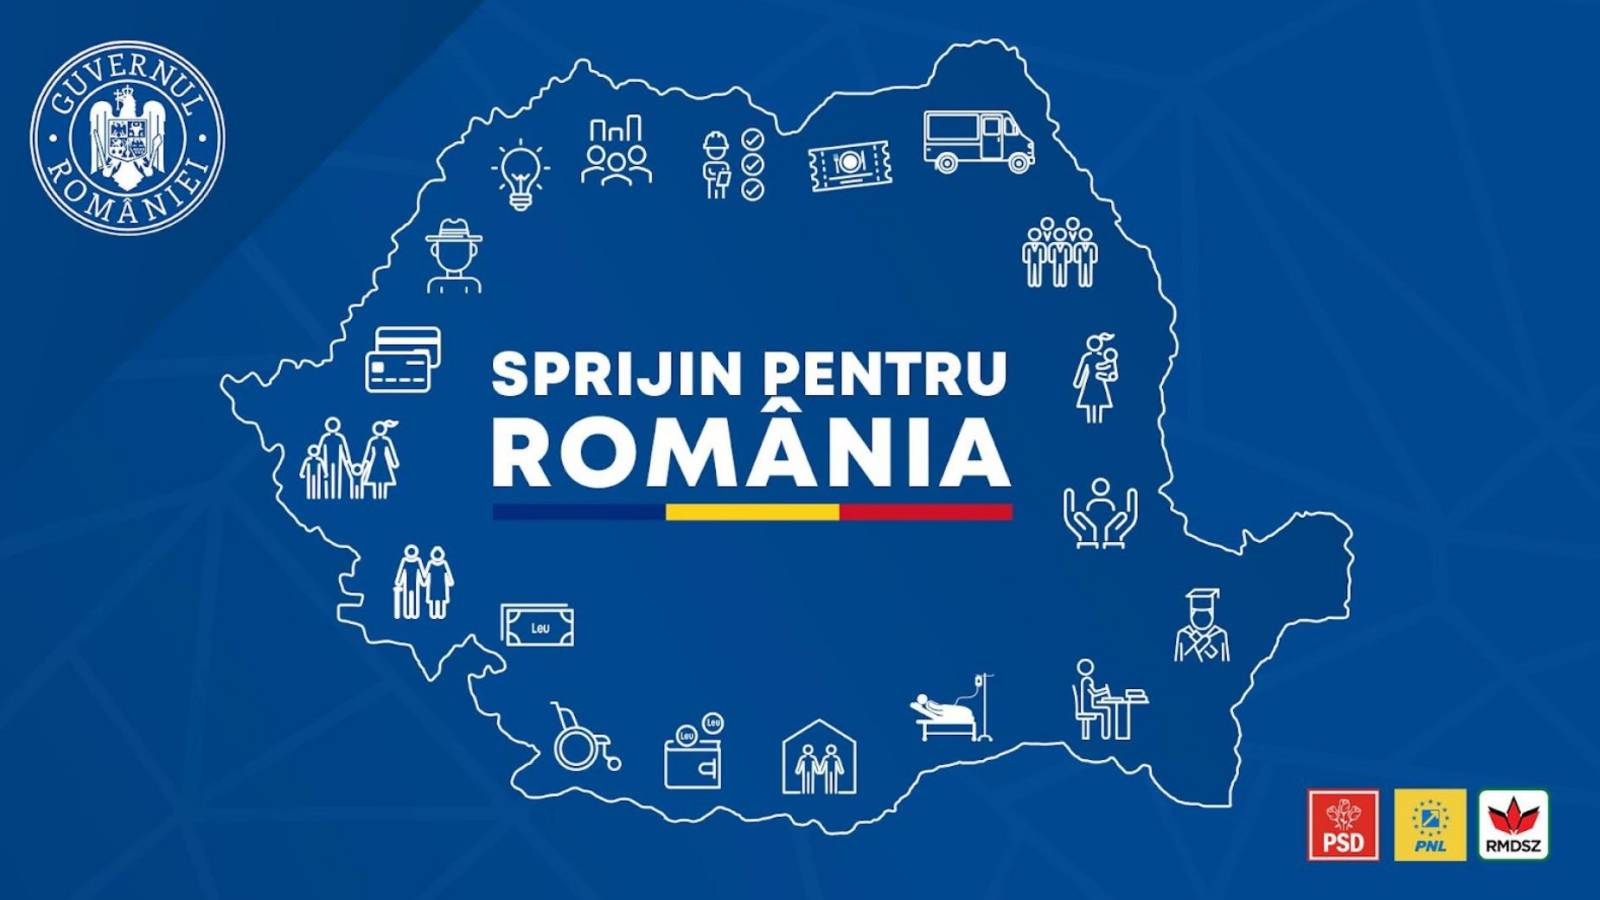 Rządowy Pakiet Działań Gospodarczo-Społecznych dla Rumunii